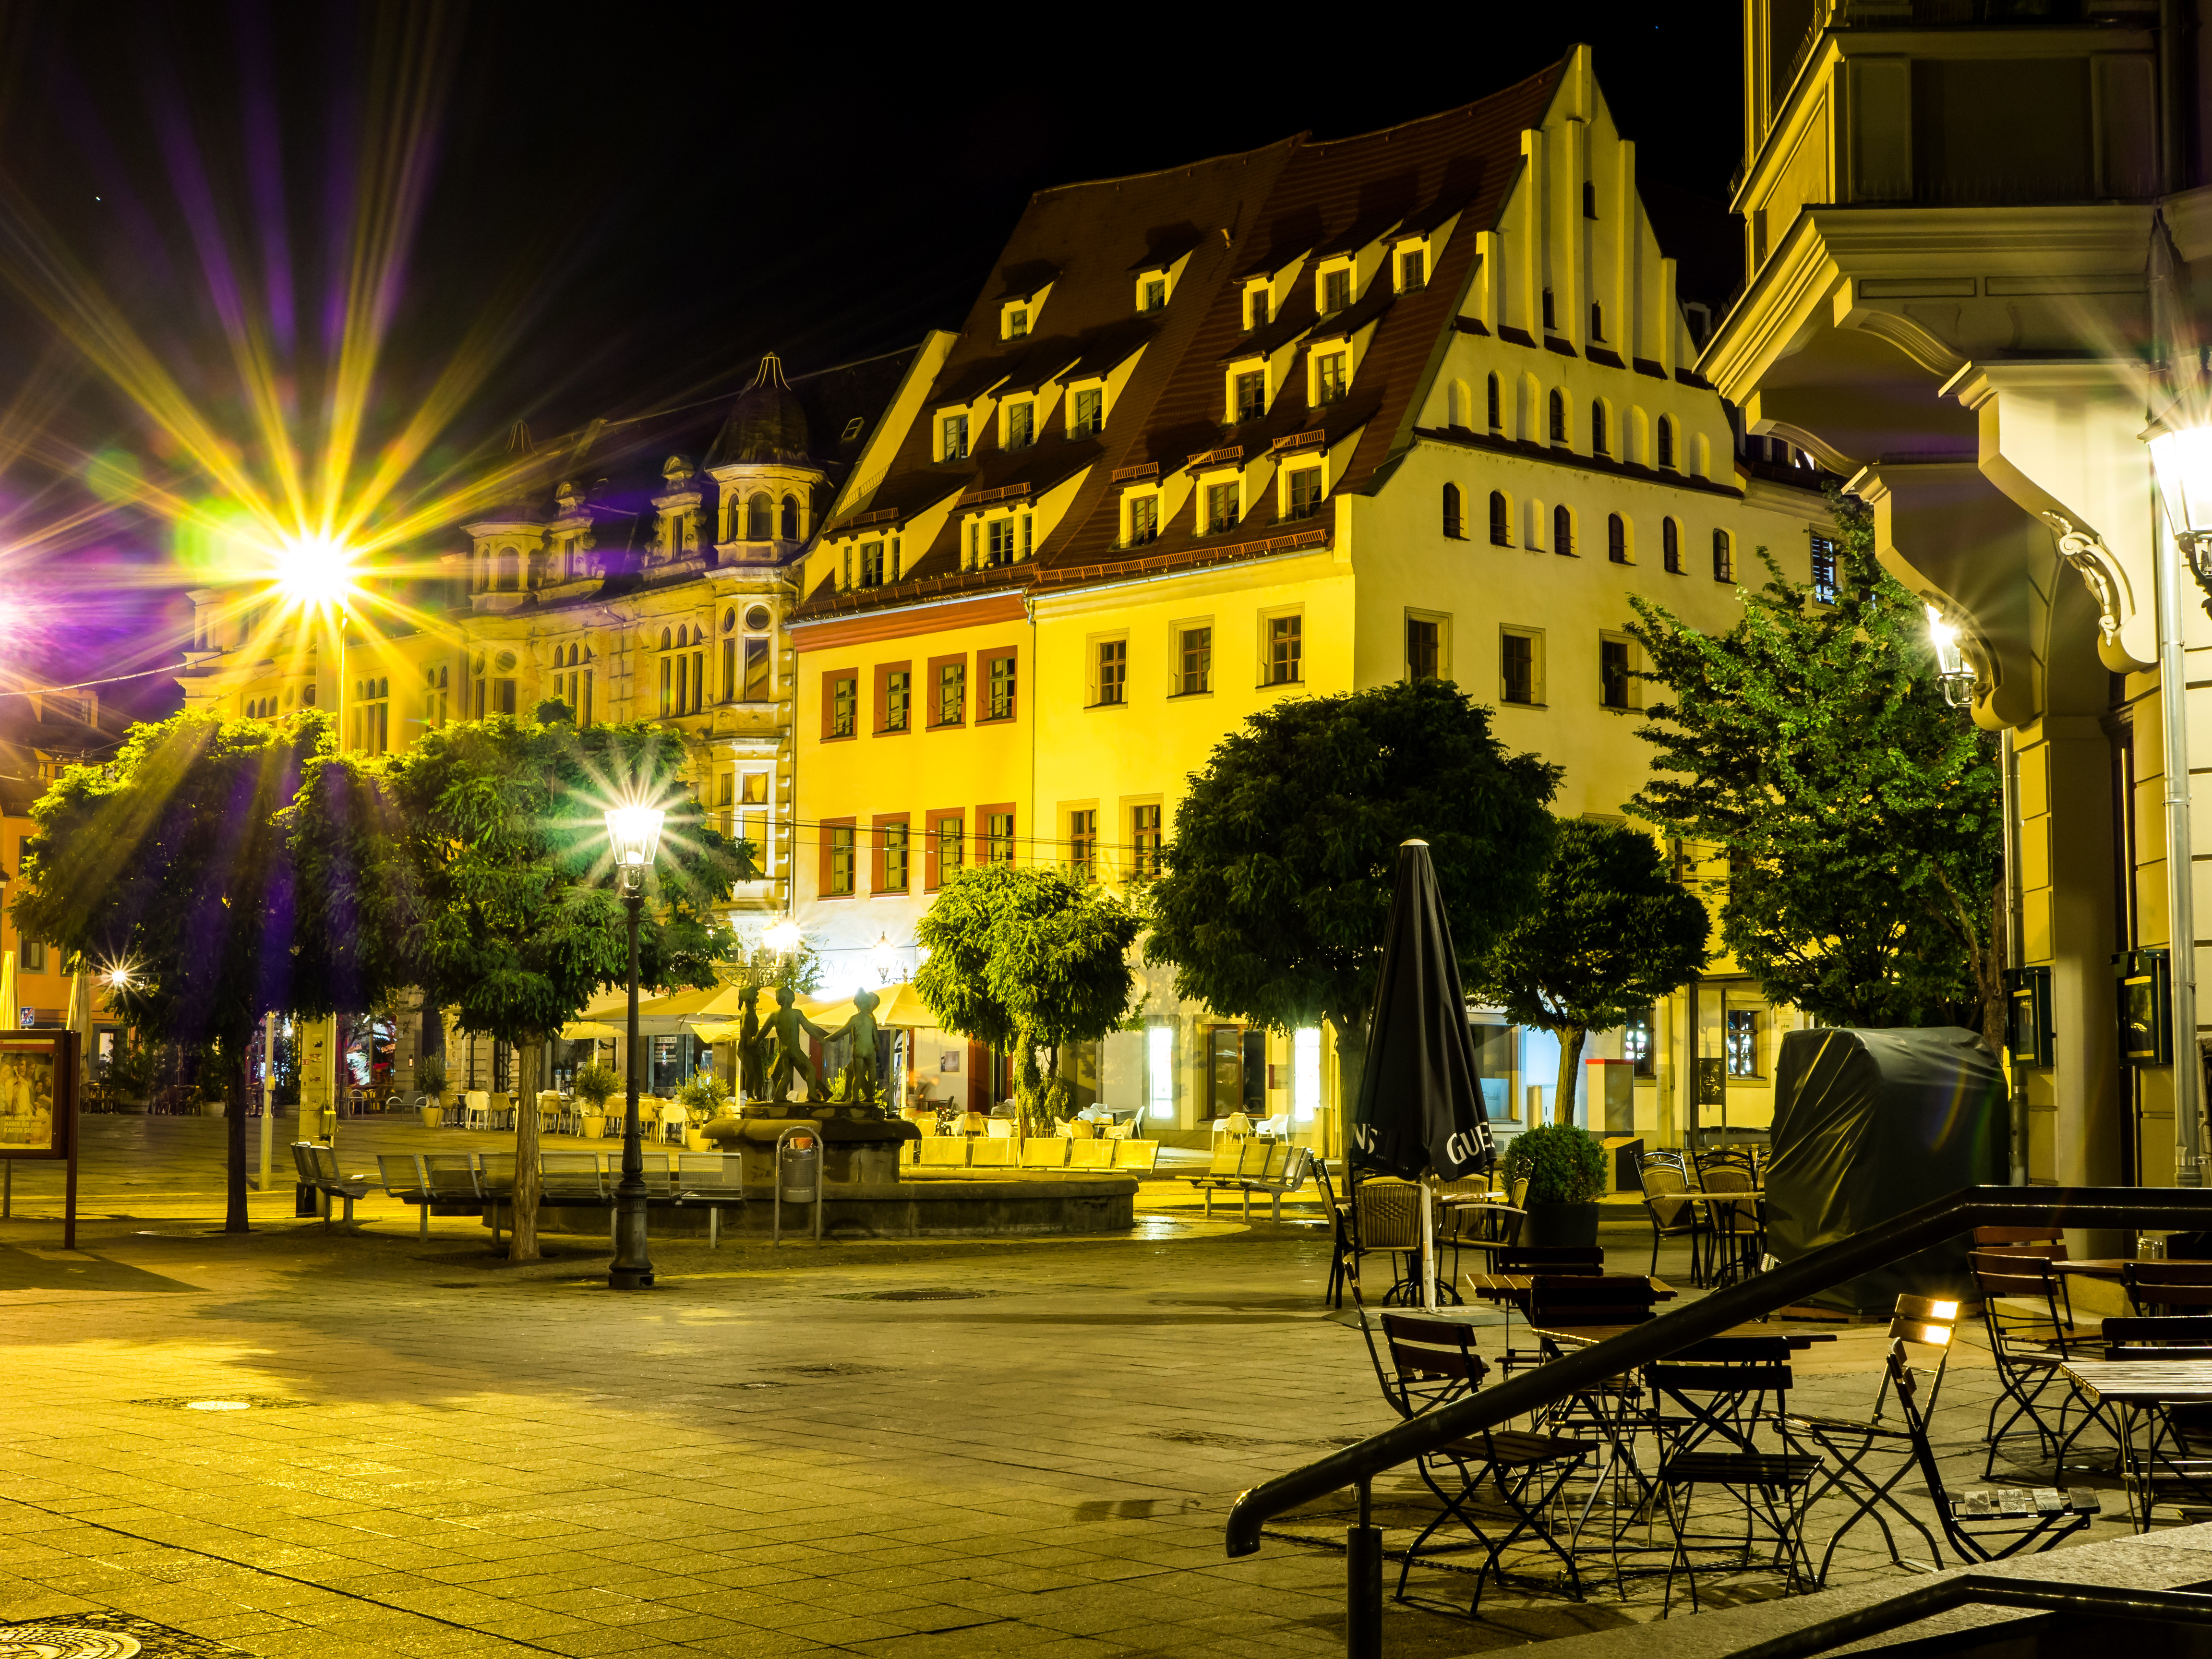 Ночной городок. Город Цвиккау Германия. Город Цвиккау Германия фото. Ночной город Bretten в Германии. Город Ена Германия ночная.